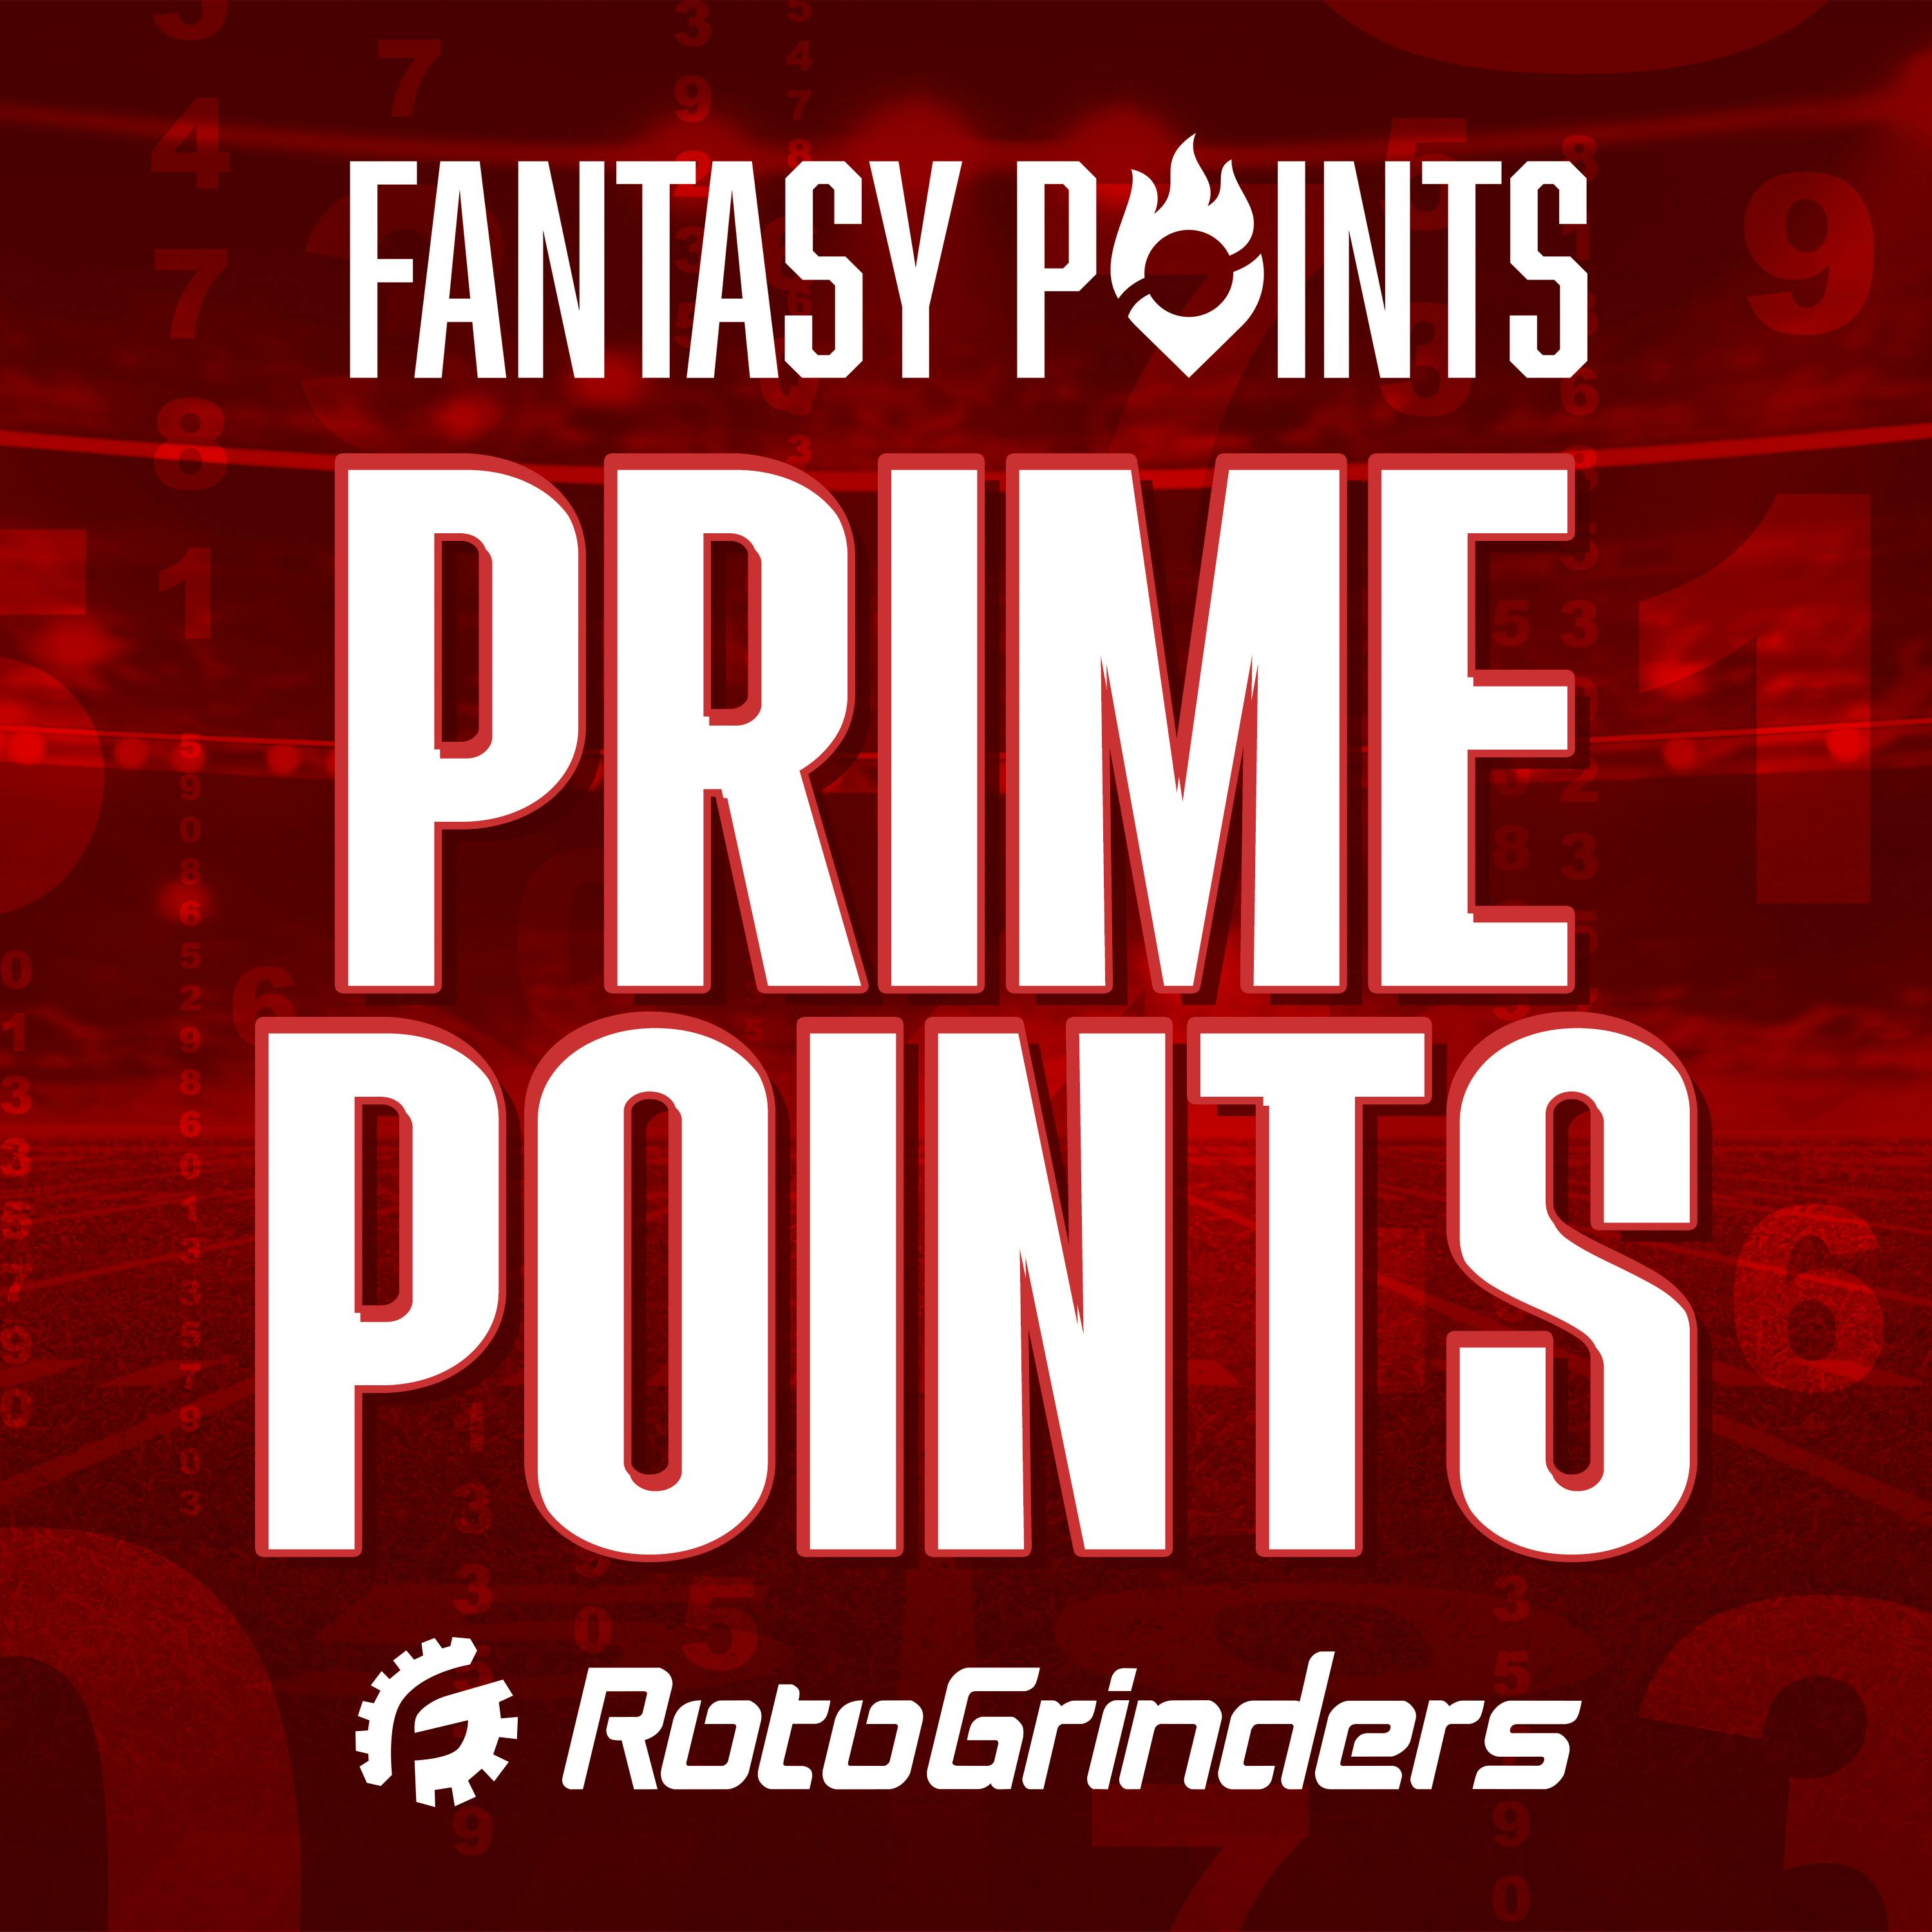 NFL Prime Points: Early Week NFL Picks & Predictions - Week 7